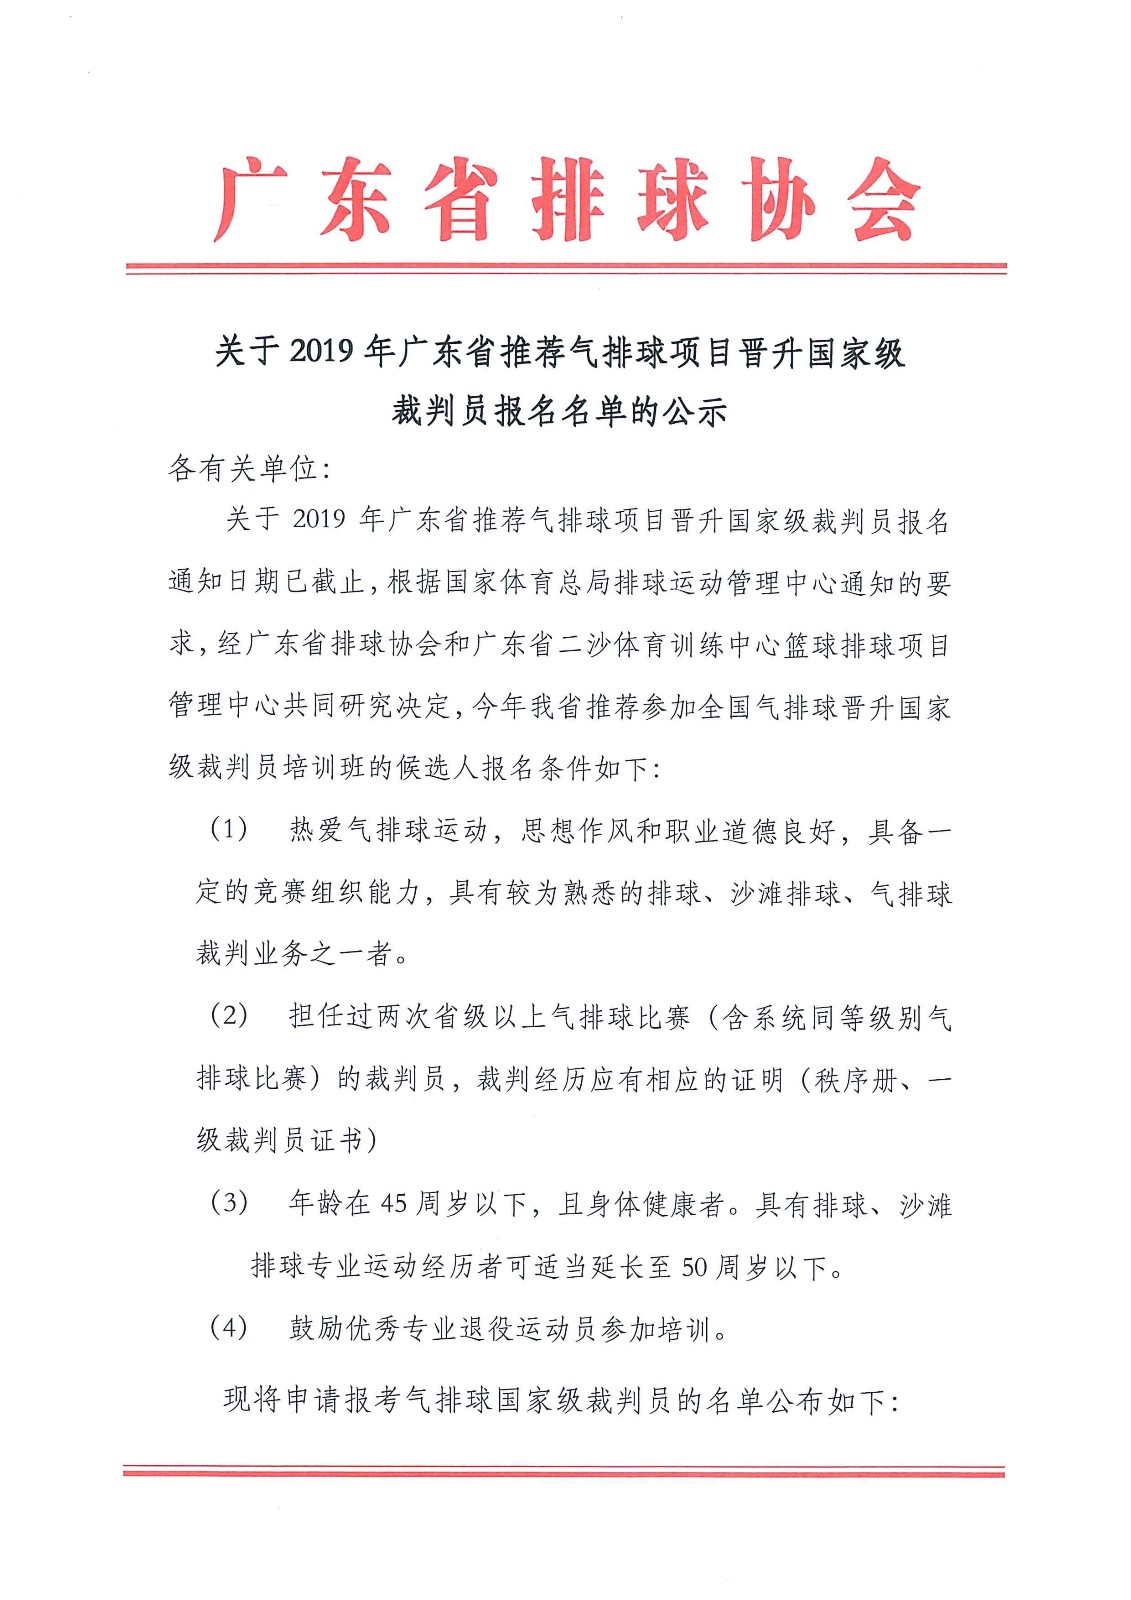 关于2019年广东省推荐气排球项目晋升国家级裁判员报名名单的公示1.jpg